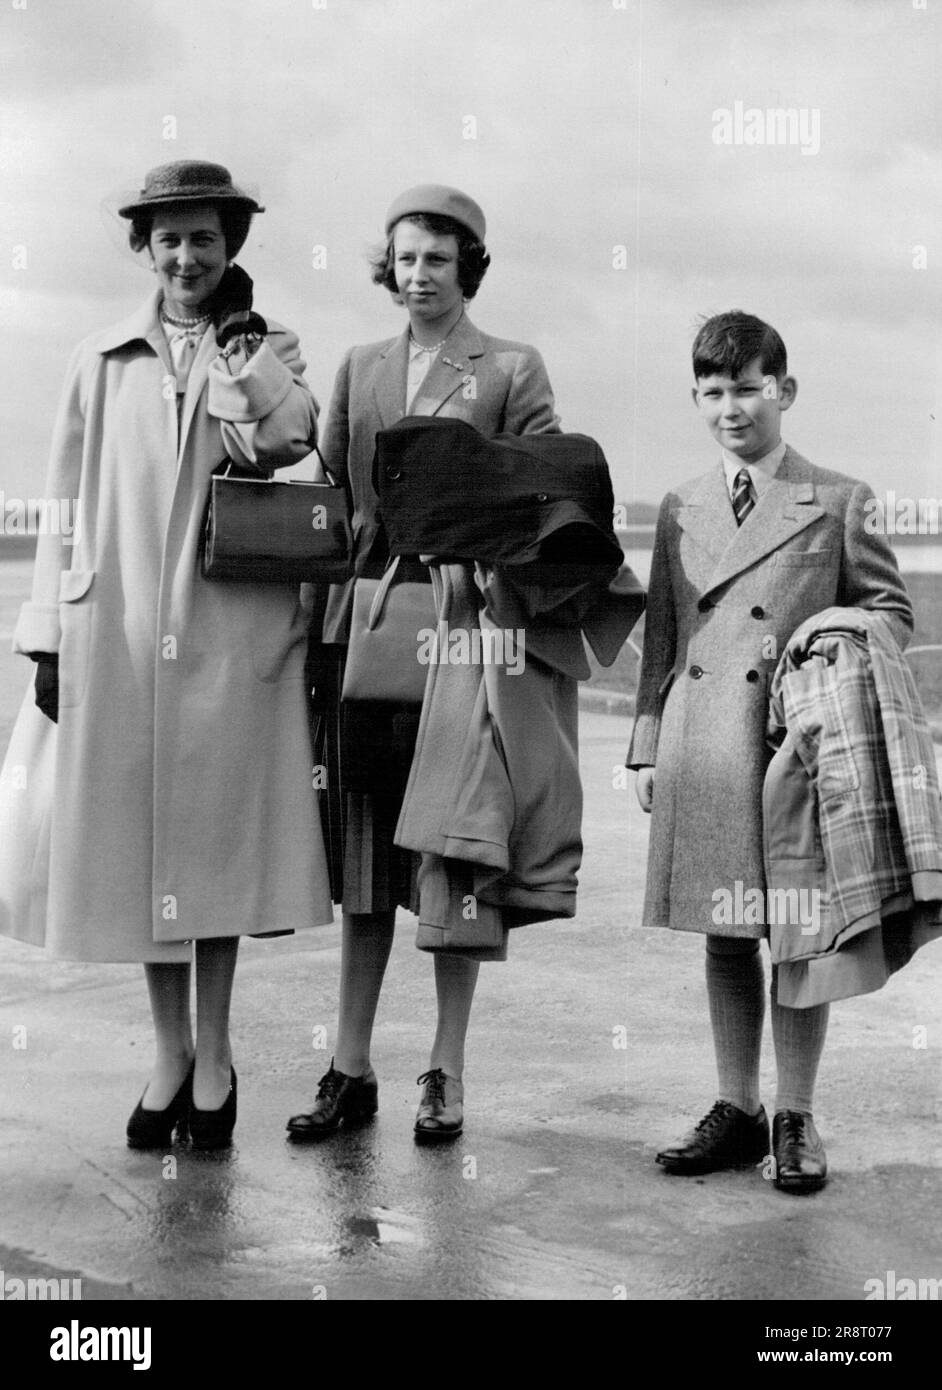 In aereo reale per la Riviera - la Duchessa (a sinistra) con la Principessa Alexandra e il Principe Michael all'aeroporto la Principessa si è appena ripresa dalla sua operazione per adenoidi. La Duchessa di Kent, la Principessa Alexandra, 13 anni, e il Principe Michele, 8 anni, Hanno fatto il loro primo viaggio in uno dei vichinghi volo del Re quando hanno lasciato l'aeroporto di Londra per Nizza la mattina dell'8 aprile 1951. L'aereo reale era diretto a Malta per portare la principessa Elisabetta e il duca di Edimburgo a Roma. Nizza è una normale fermata per il rifornimento di carburante per il viaggio dei vichinghi a Malta. 7 settembre 1954. (Foto associata alla stampante foto). Foto Stock